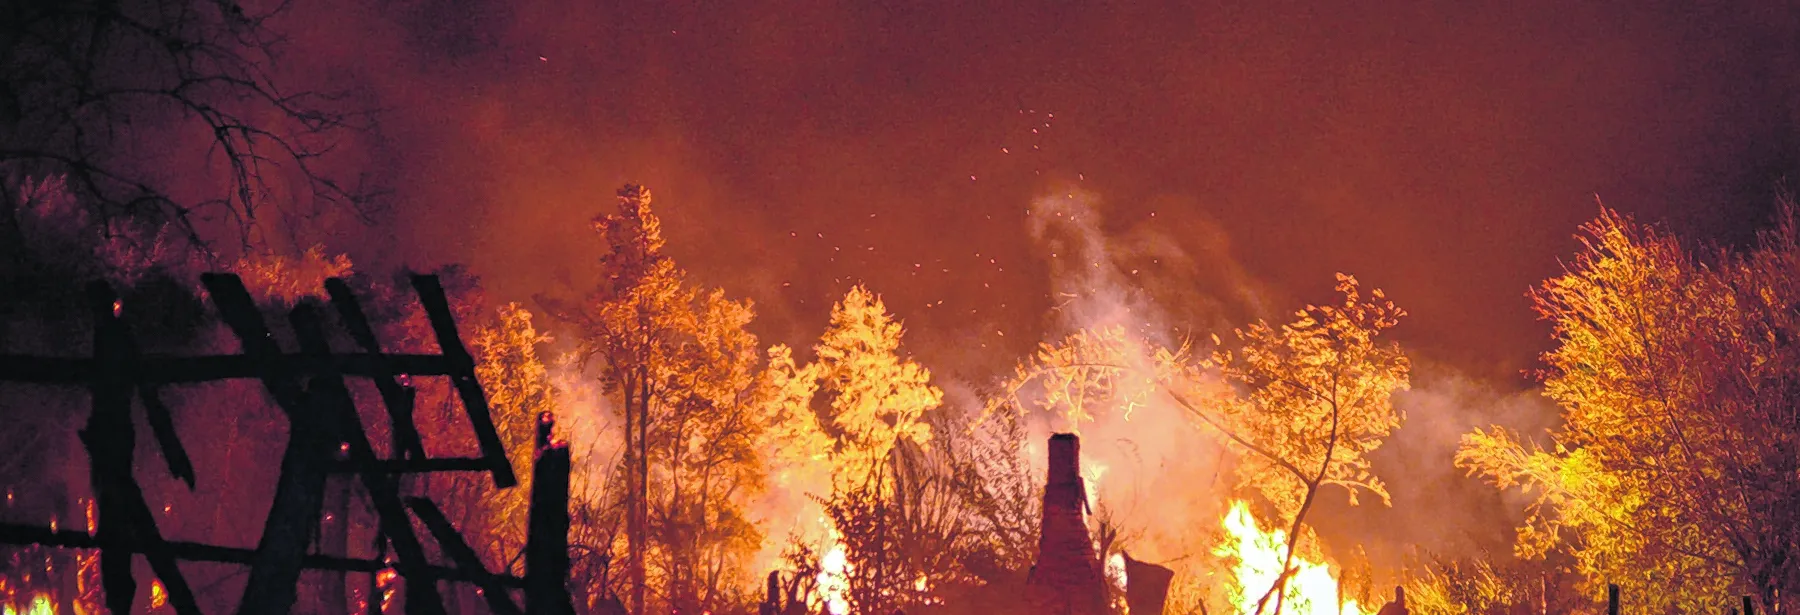 Incendios forestales en la Patagonia, un drama para prevenir y educar